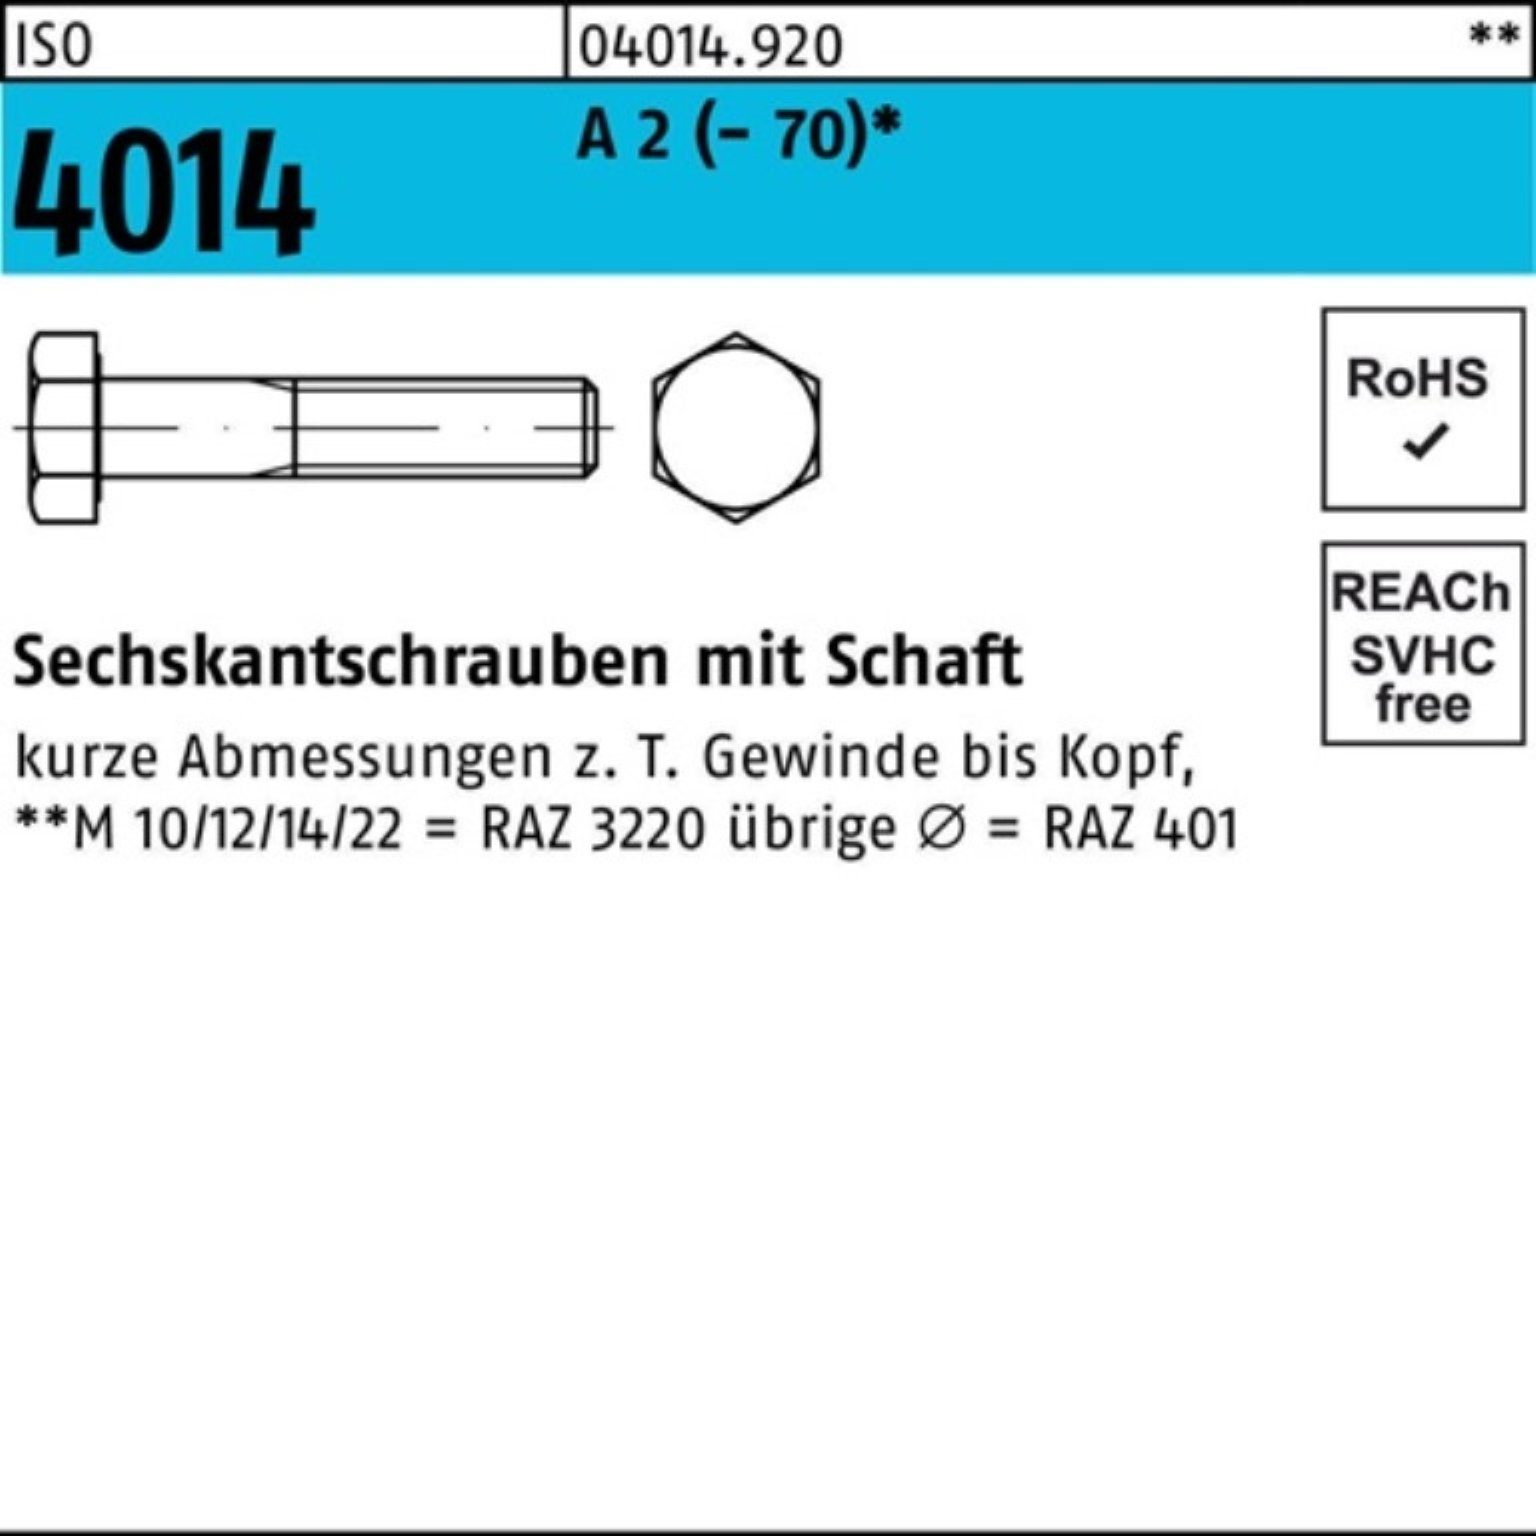 Sechskantschraube 2 1 (70) 4014 M20x St 100er Bufab A Schaft 250 Sechskantschraube ISO Pack